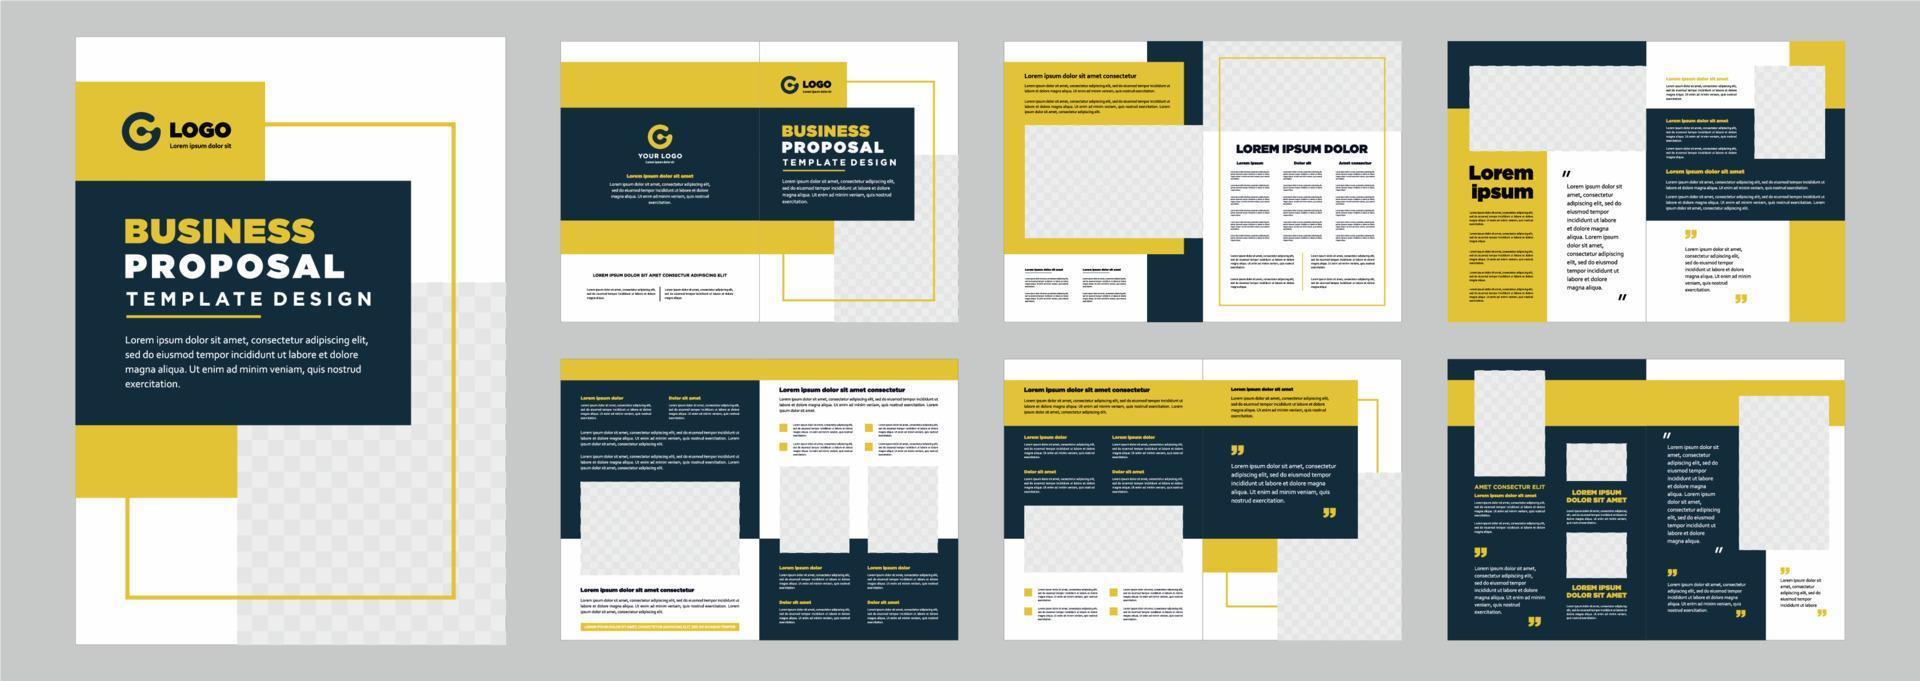 Firmenprofil-Vorschlag oder Broschüren-Vorlagen-Layout-Design Form minimalistischer Geschäftsvorschlag oder Broschüren-Vorlagen-Design vektor